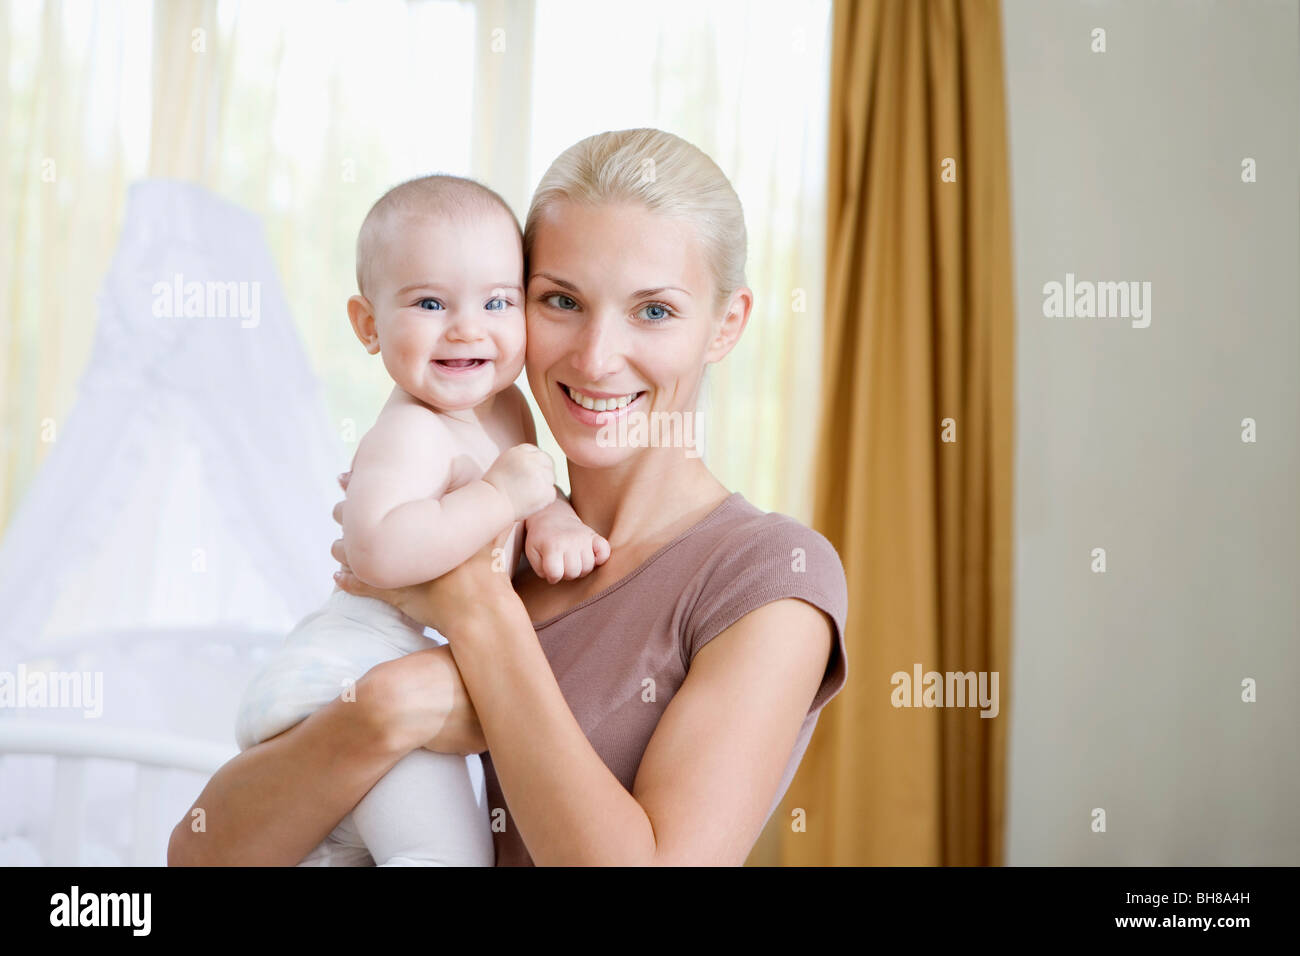 Eine Frau und ihr Baby in einem Kindergarten Stockfoto